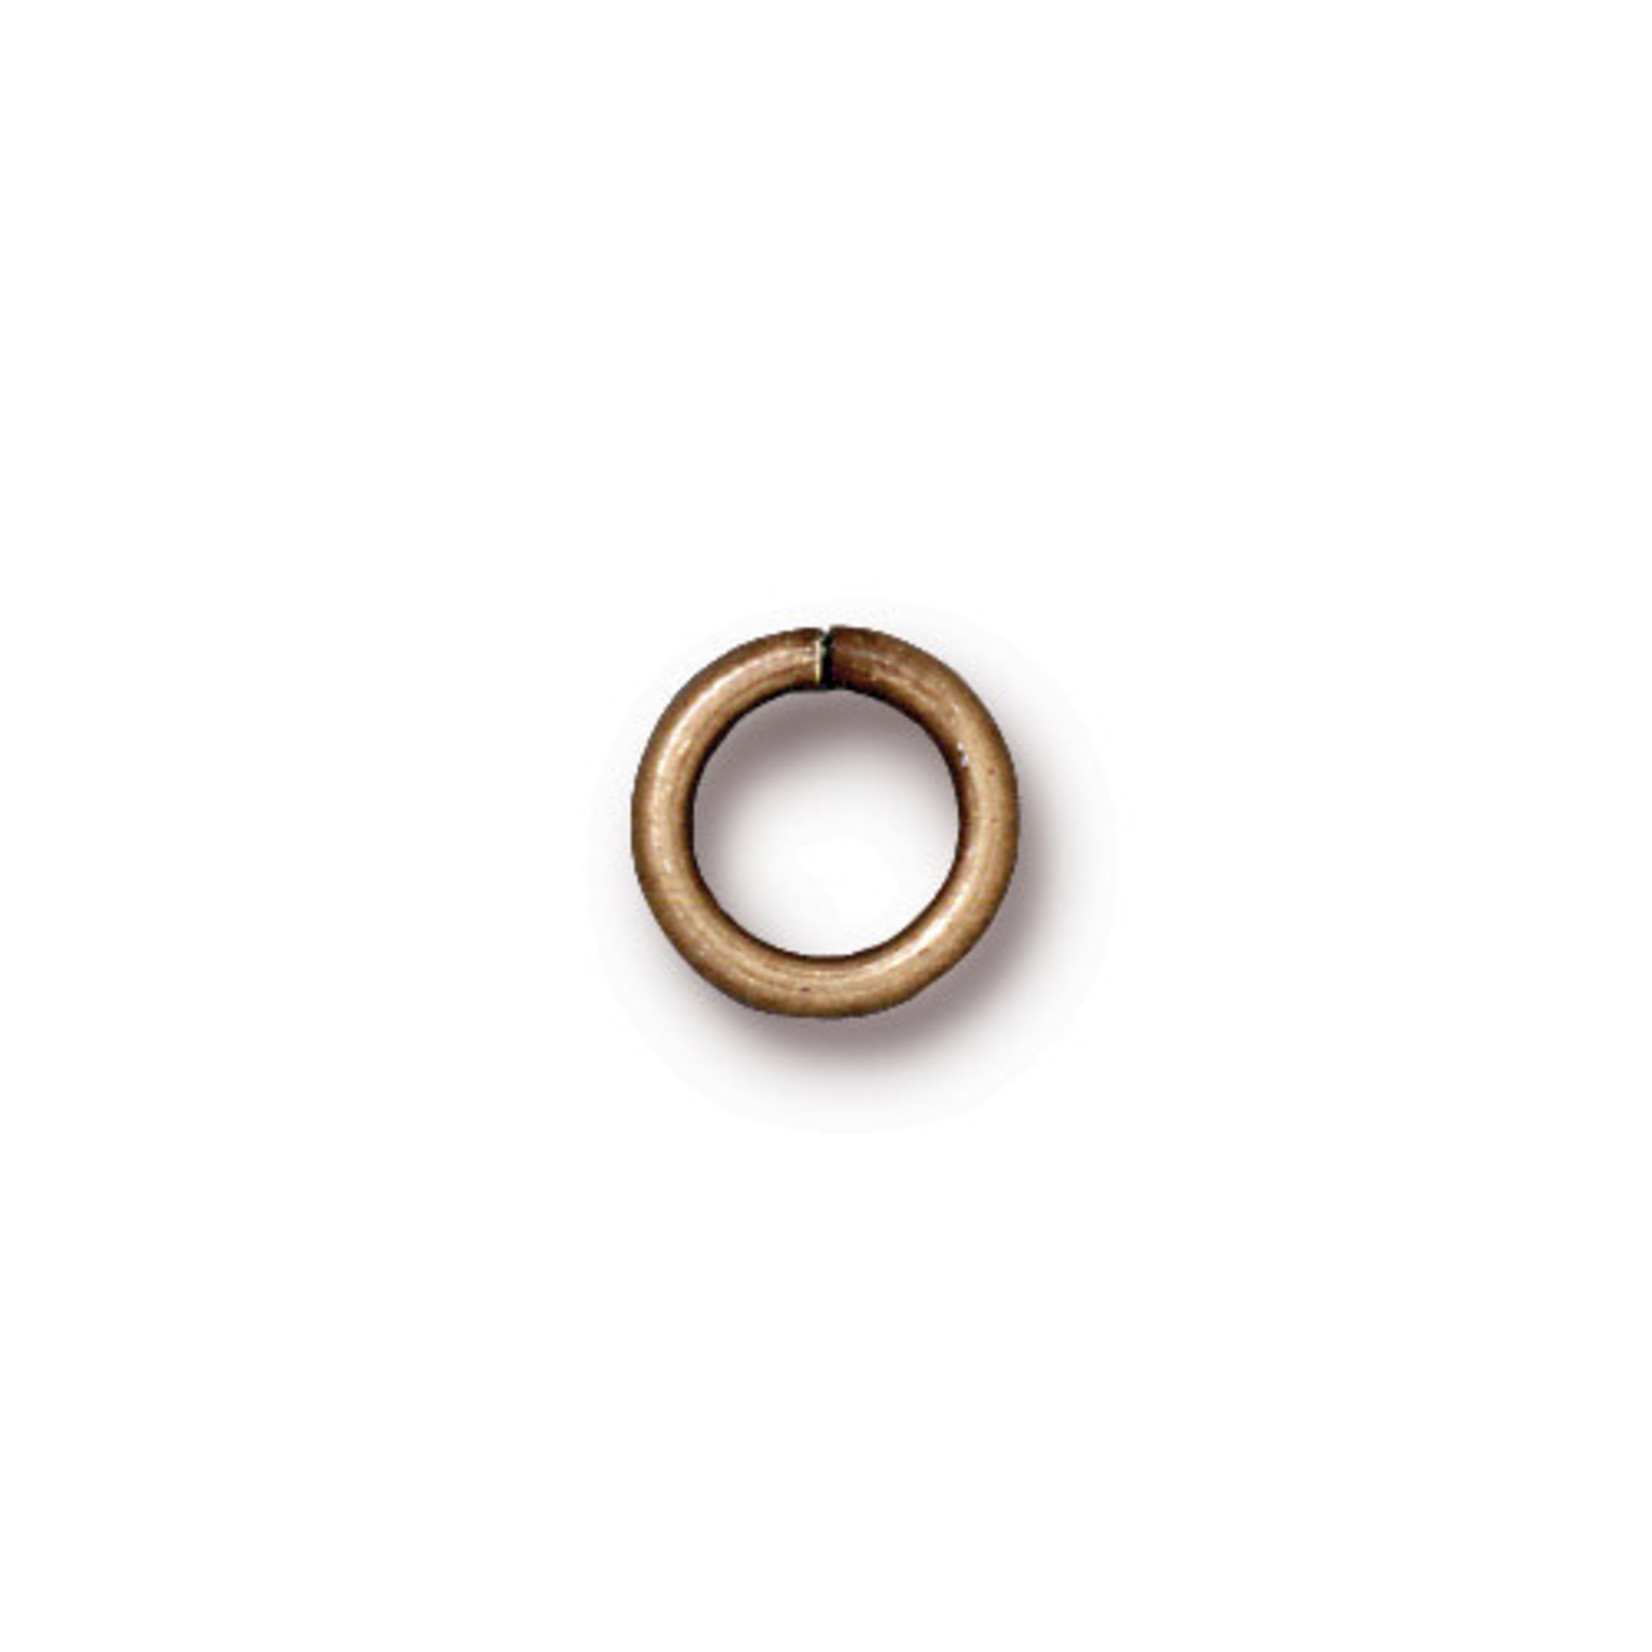 TierraCast Tierracast Oxidized Brass Round Jump Ring 16 Ga, 5mm ID - 20 pieces